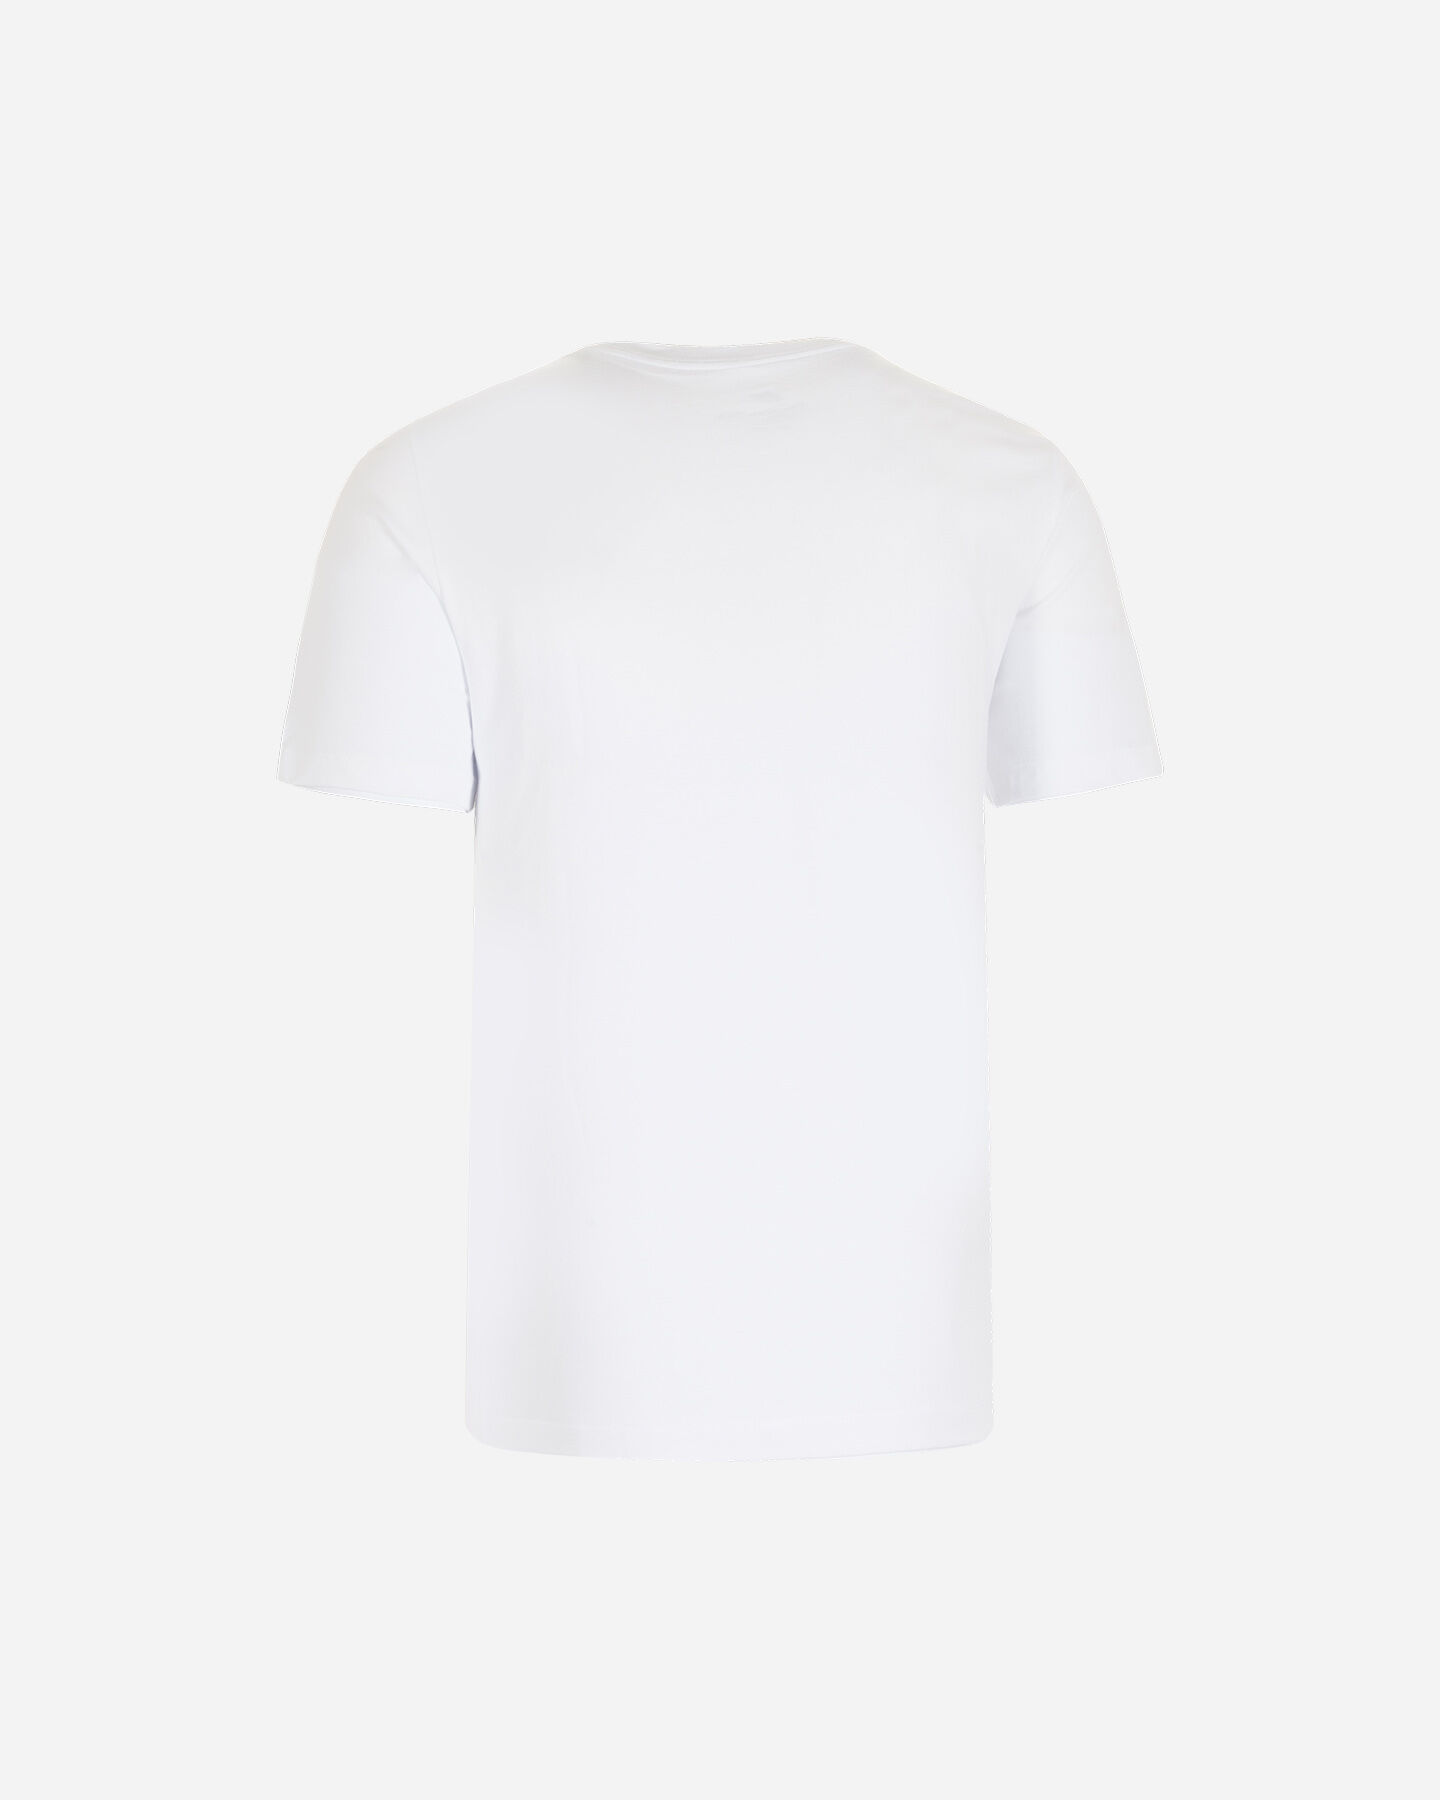  T-Shirt NIKE FUTURA ICON M S2015066 scatto 1